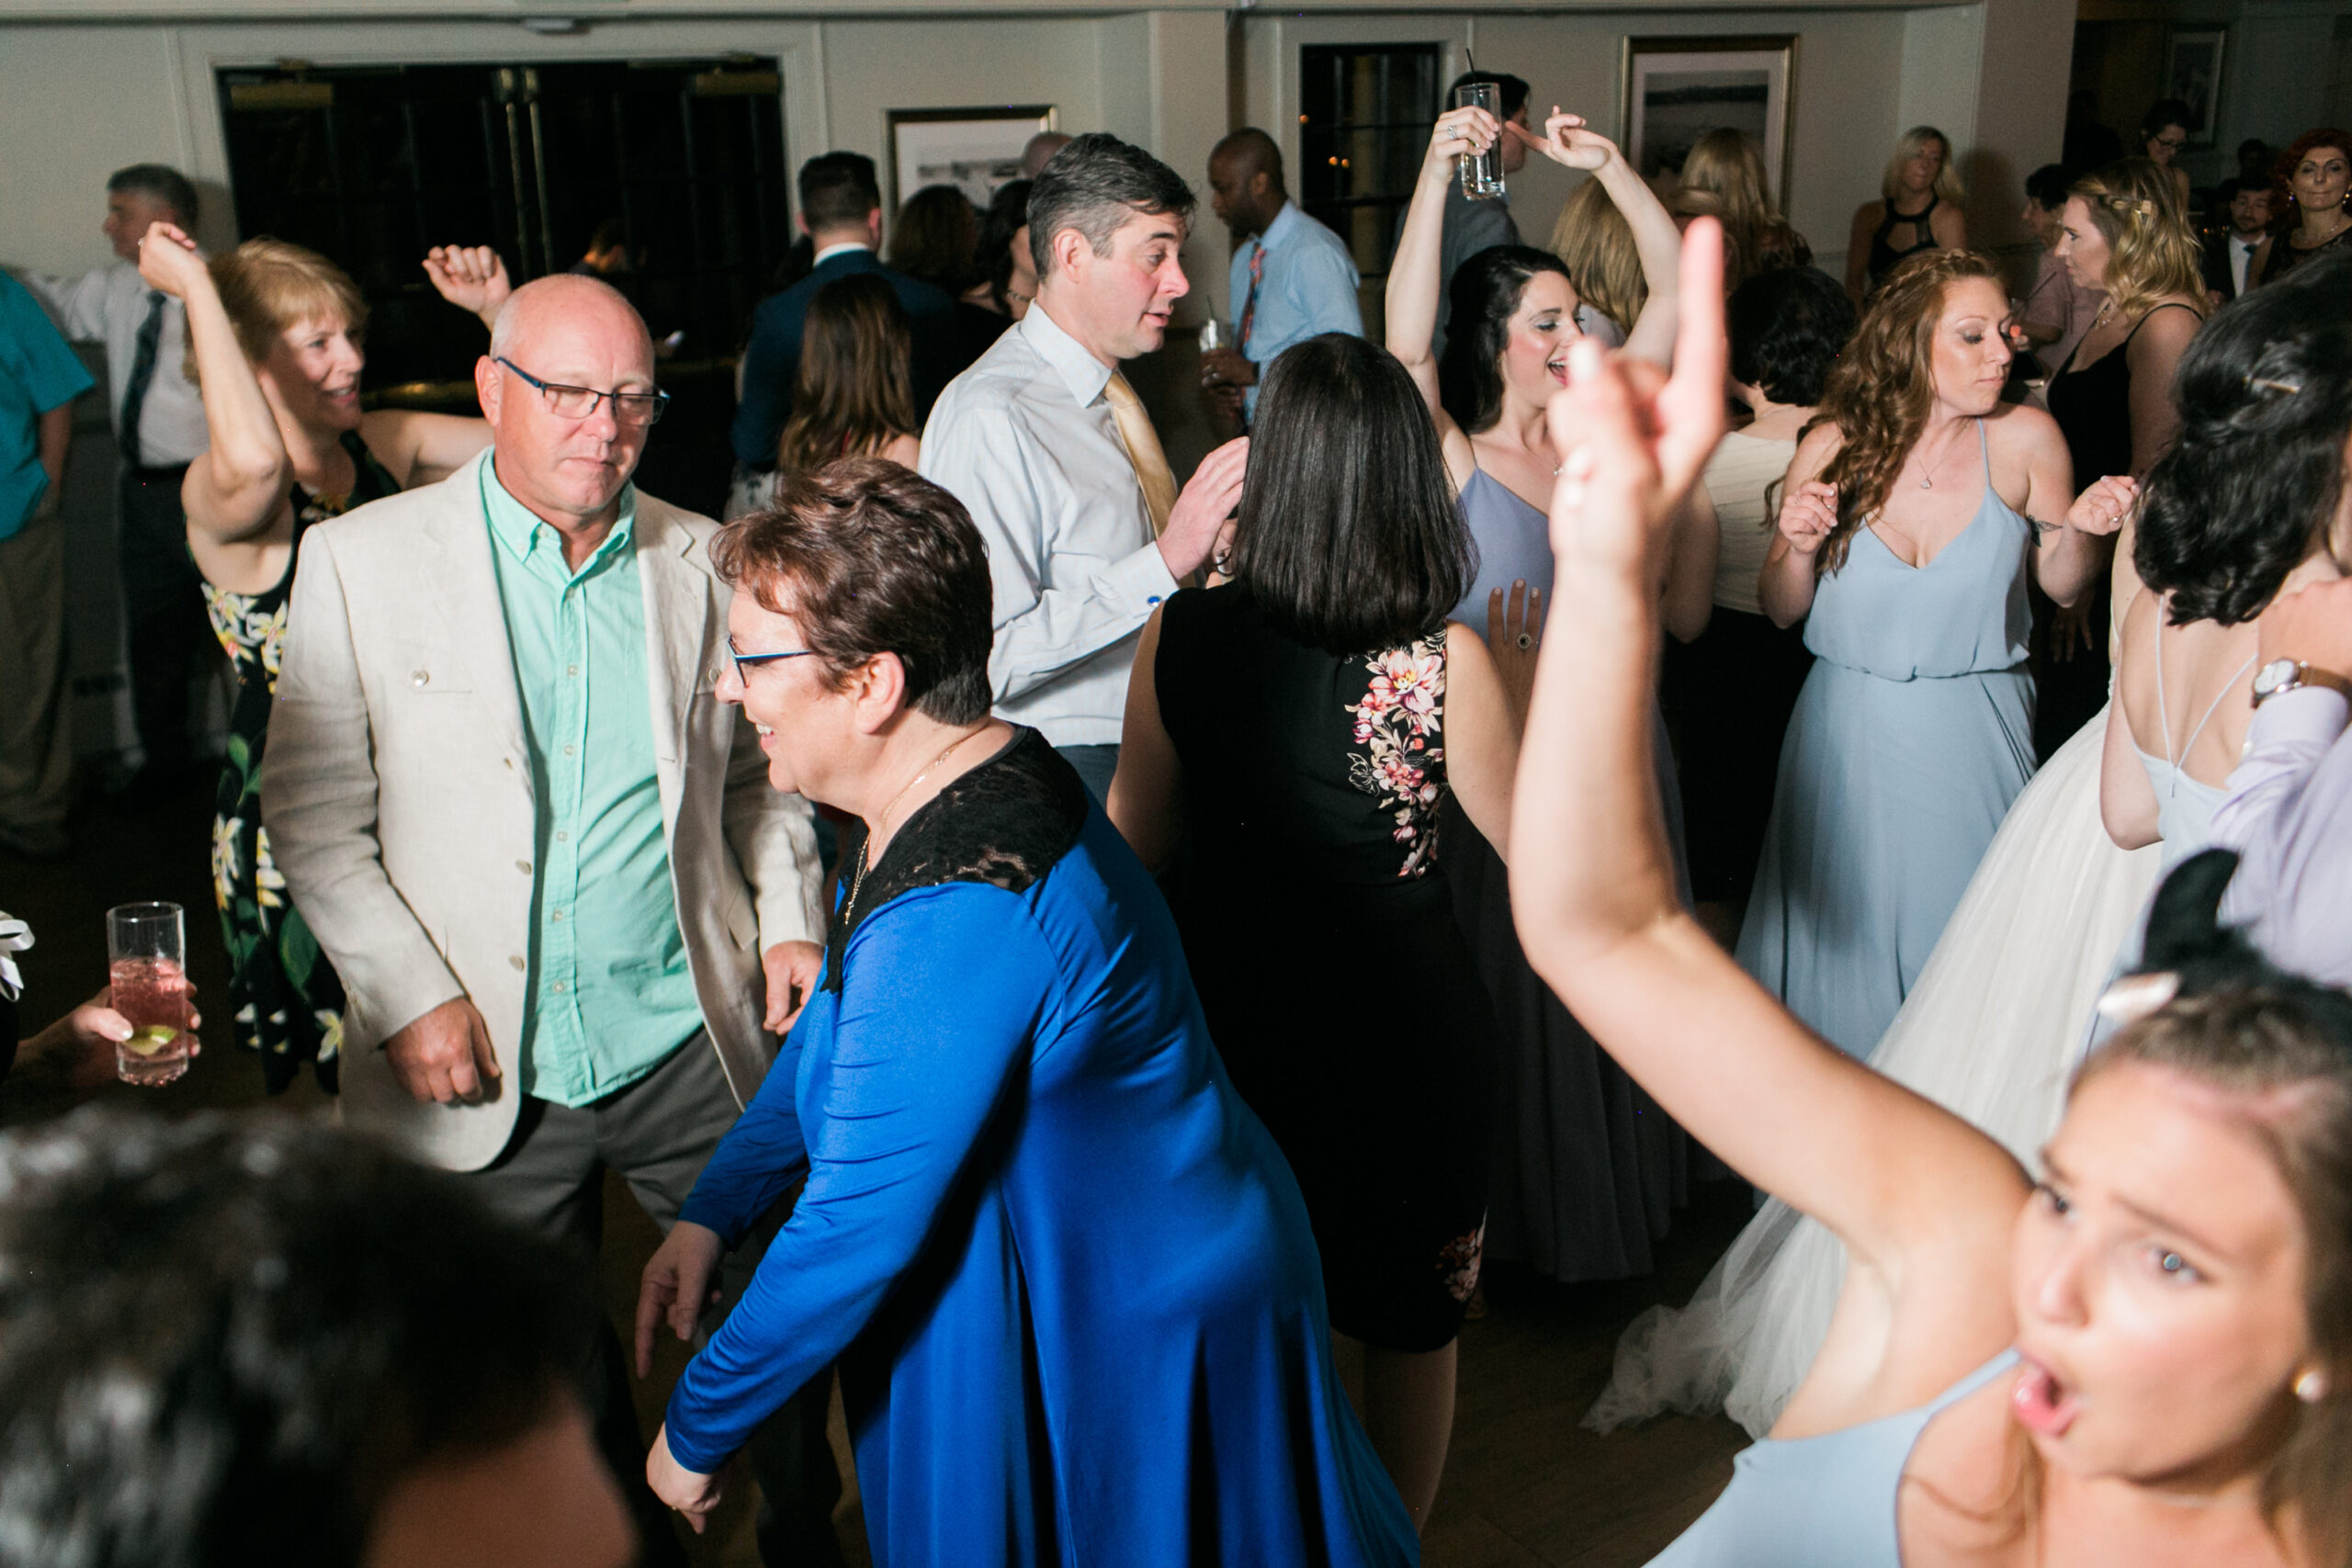 Older Wedding Guests dancing with bridesmaids on Dancefloor hands up at Latitude 41 Wedding Mystic